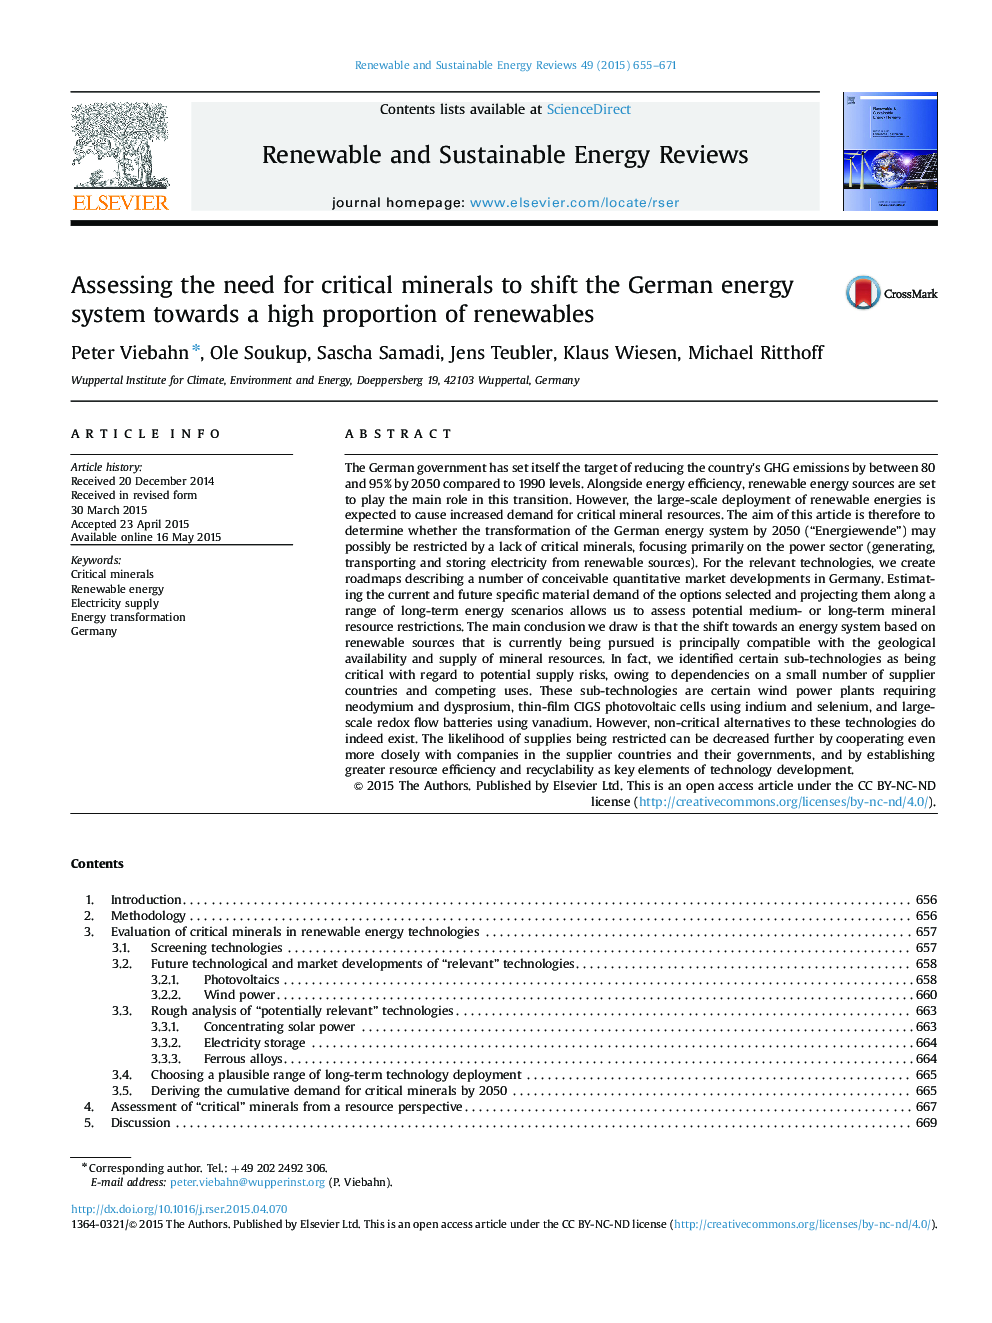 ارزیابی نیاز به مواد معدنی حیاتی برای تغییر سیستم انرژی آلمان نسبت به درصد بالایی از انرژی های تجدید پذیر 